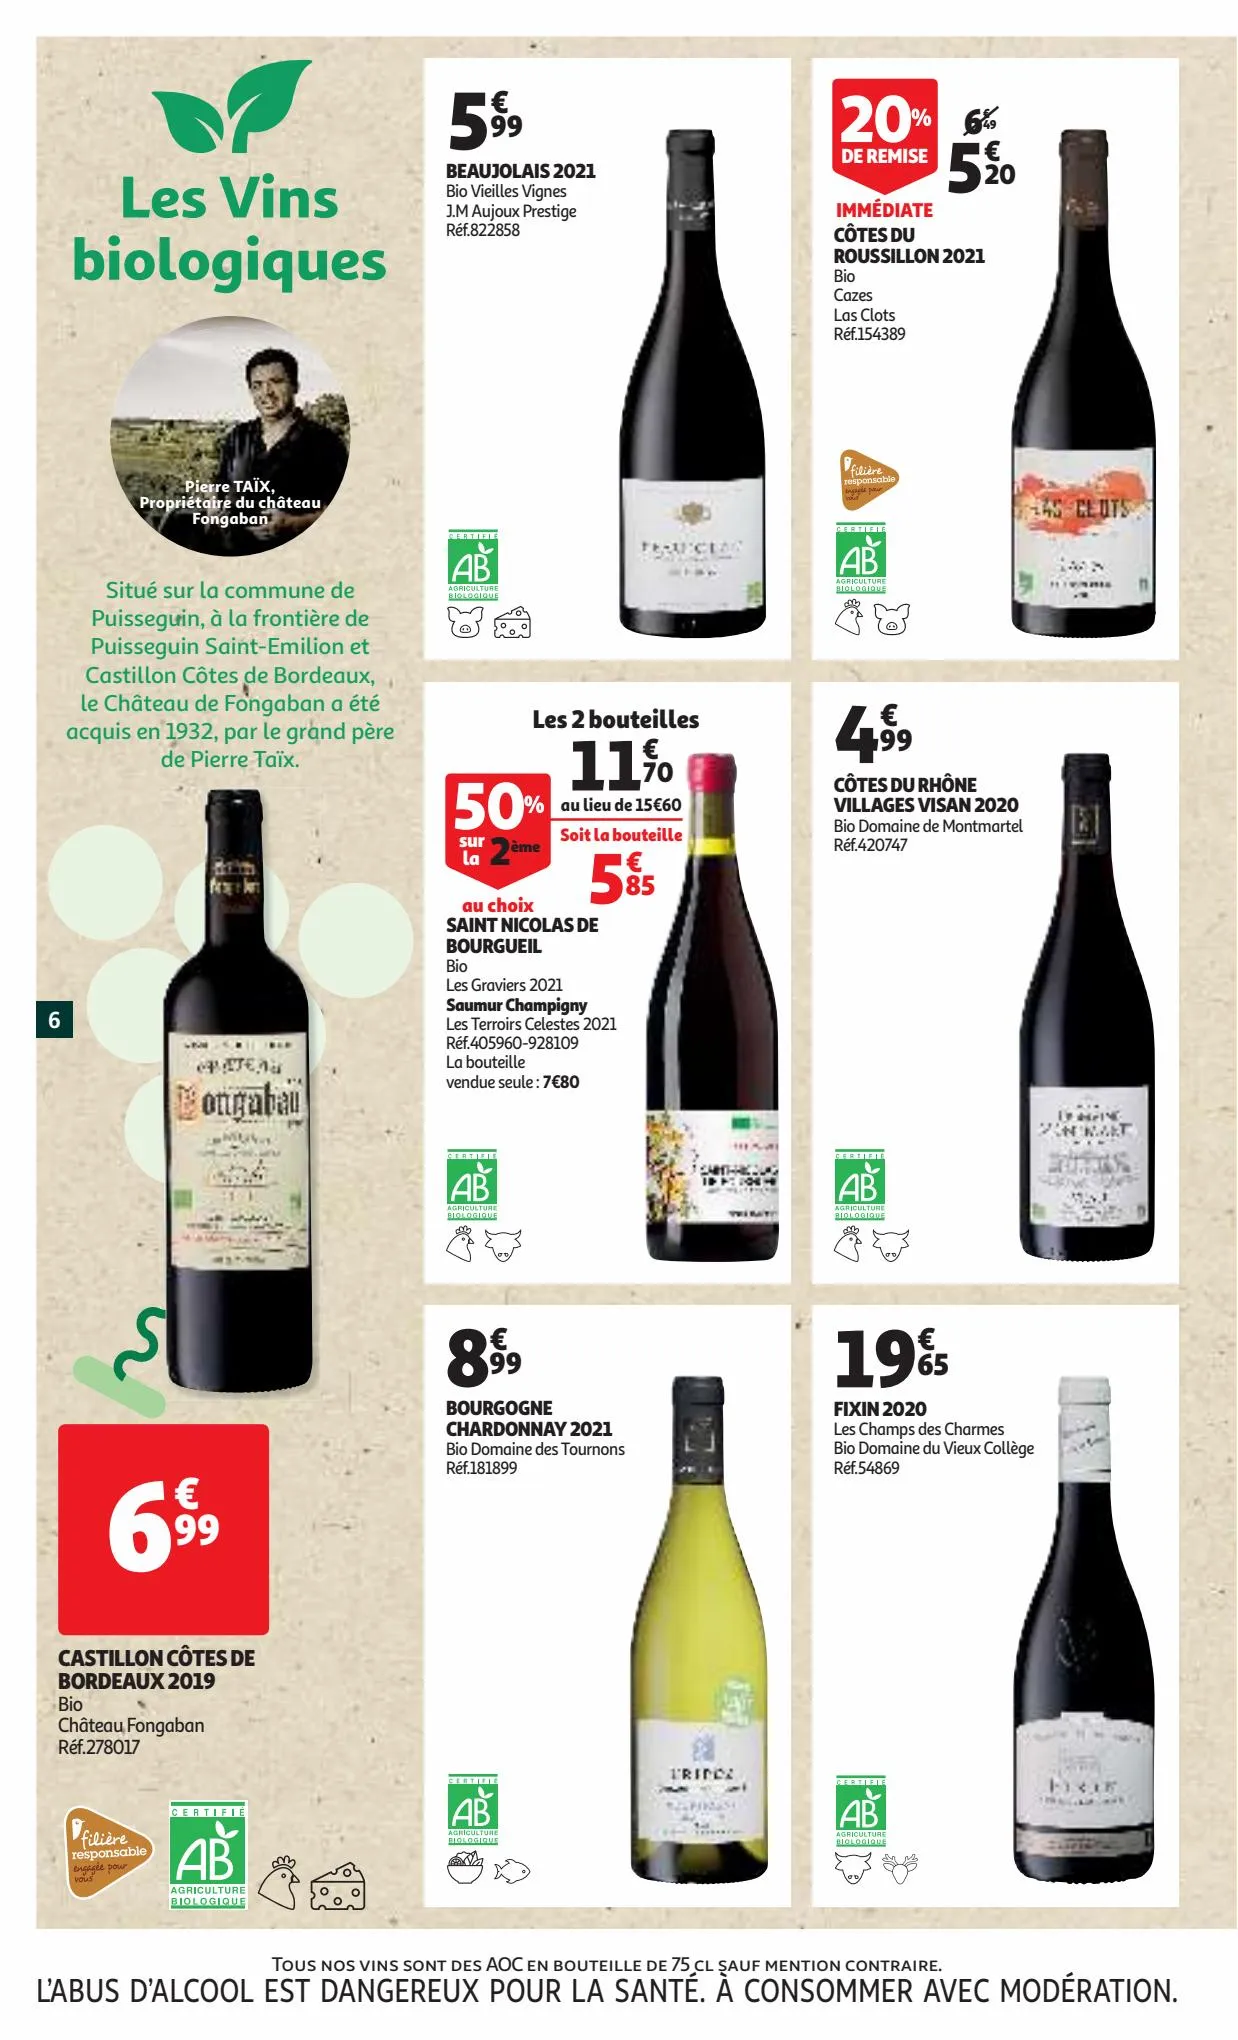 Catalogue La foire aux vins, page 00006